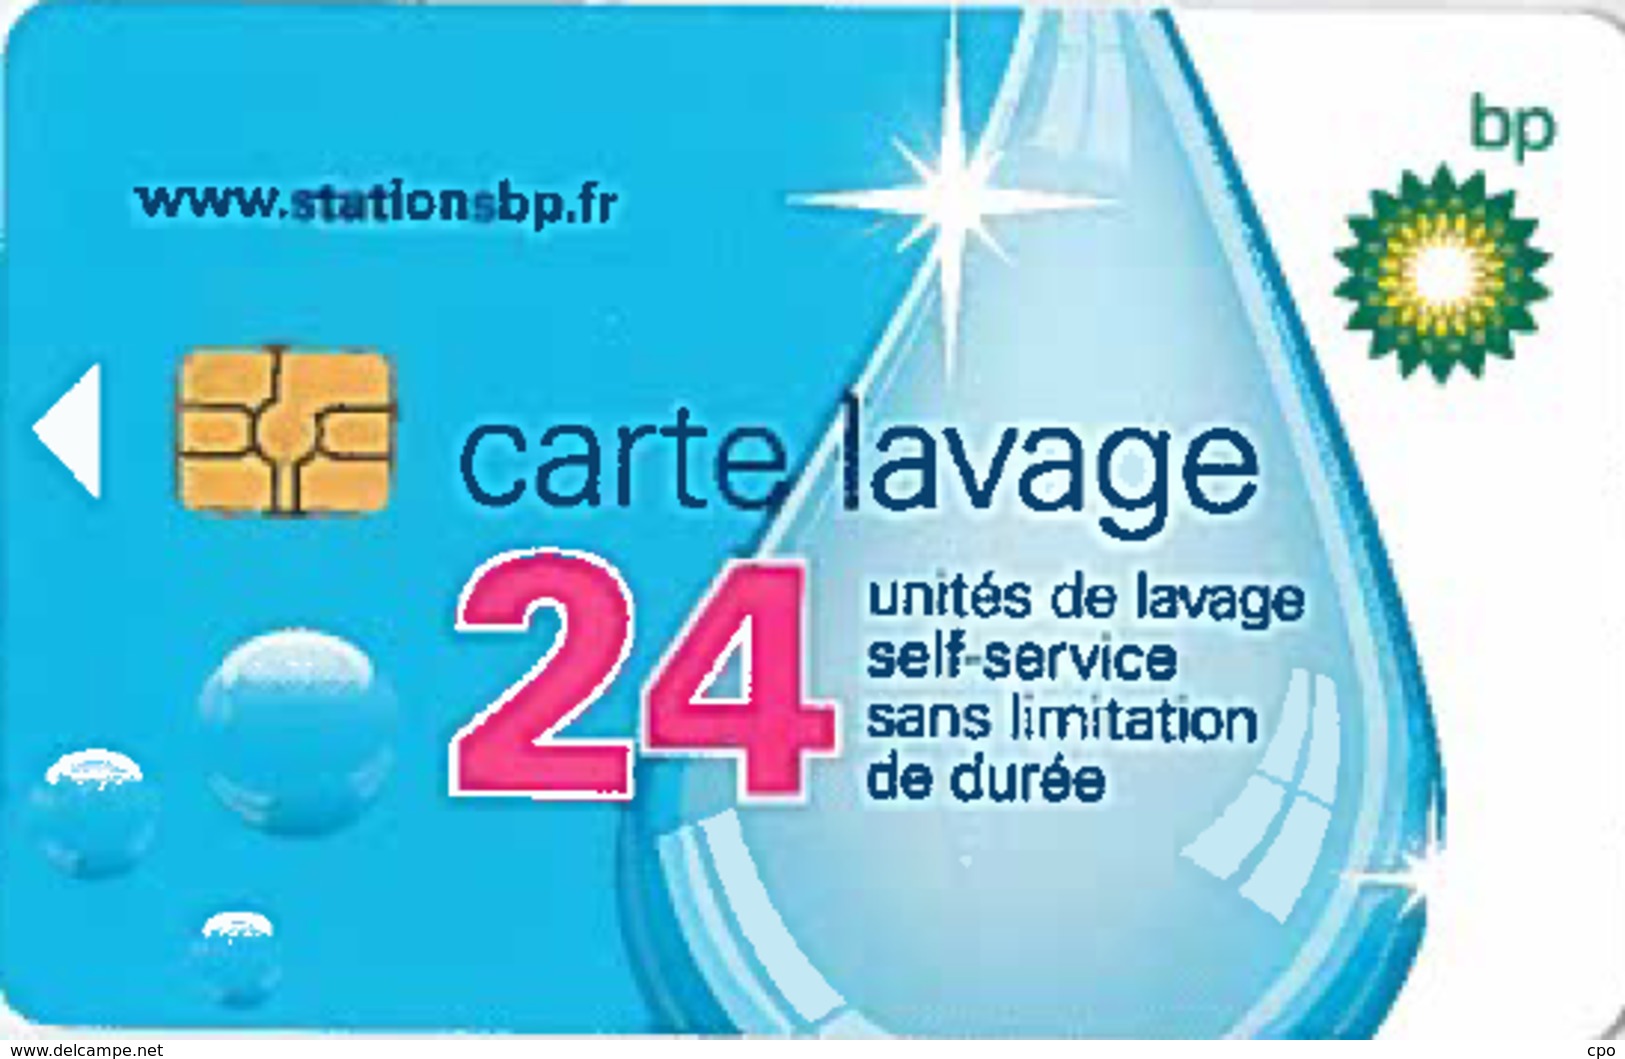 # Carte A Puce Portemonnaie  Lavage BP - Goutte - 24u Gem - Www.stationsbp.fr  RCS Pontoise 439 793 811 Tres Bon Etat - Colada De Coche